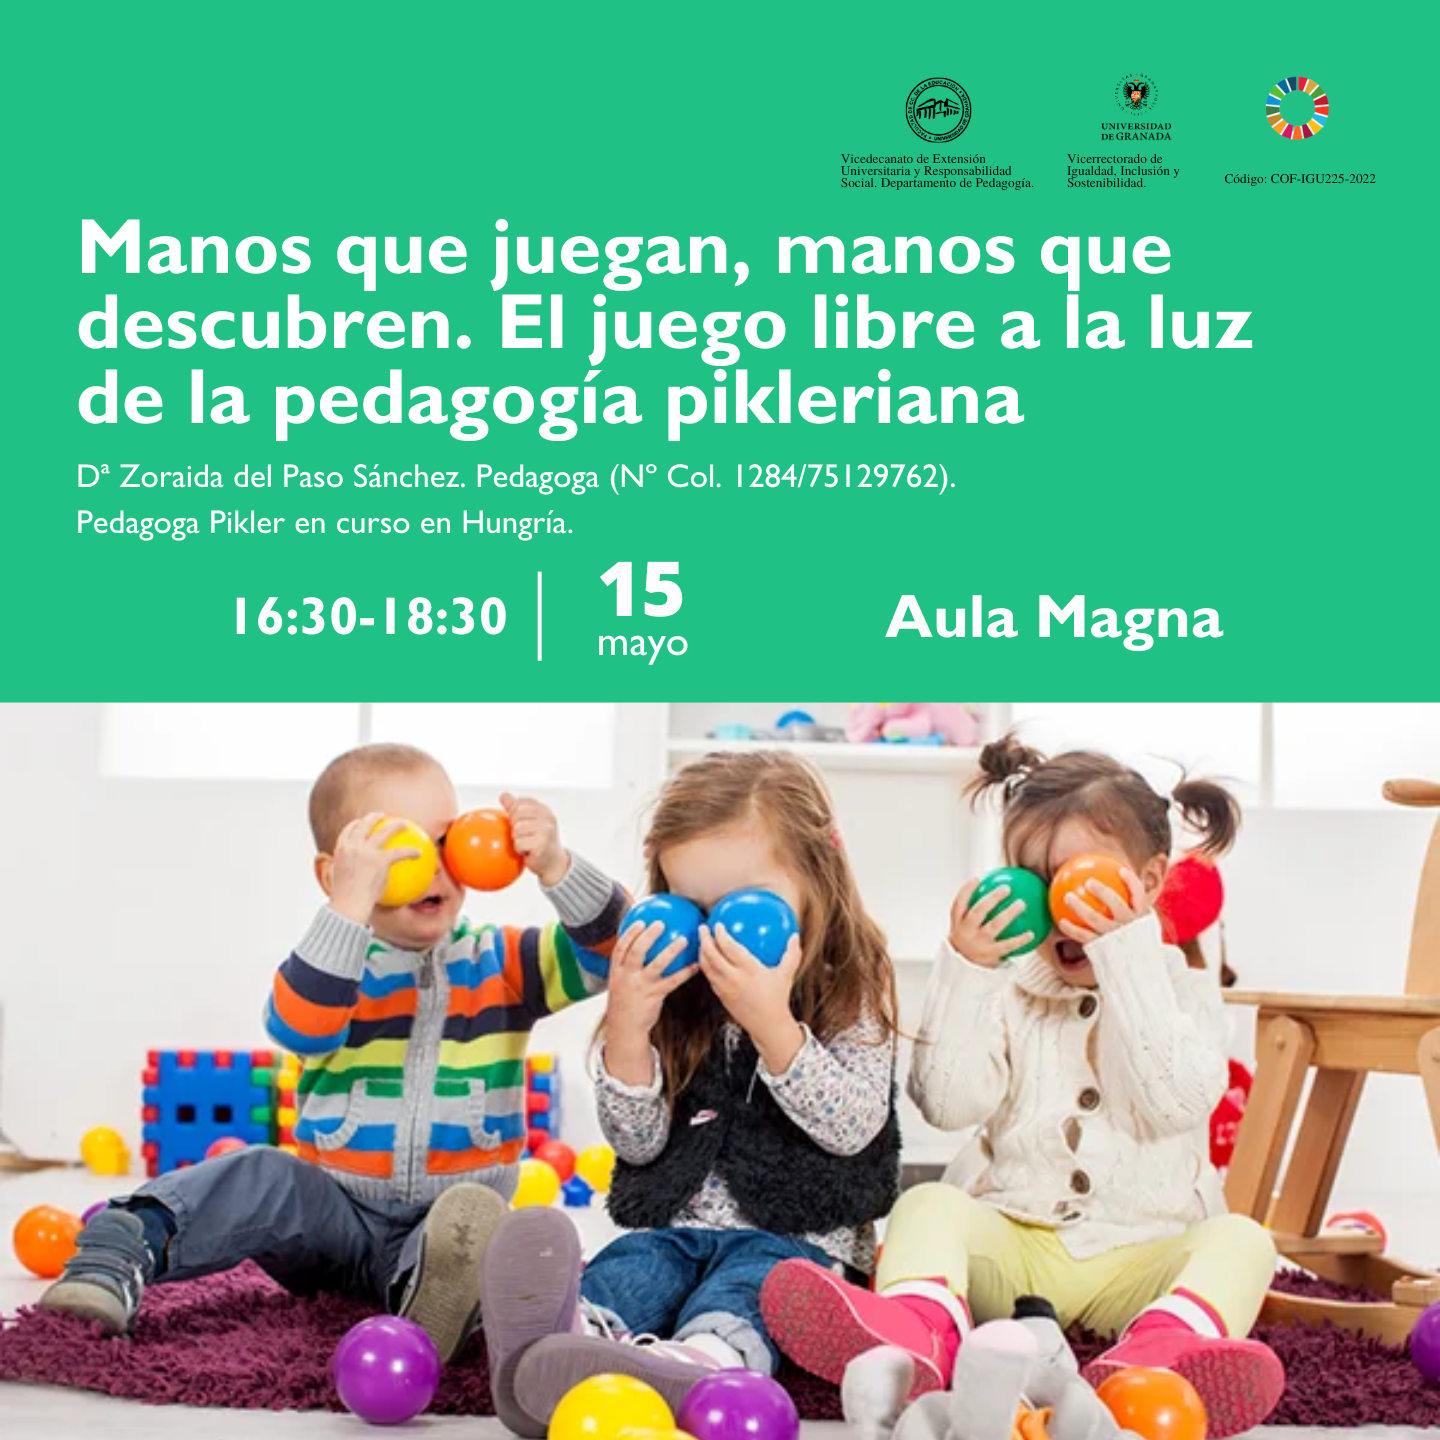 II Ciclo de Conferencias: “Socialización en la infancia: Propuestas coeducativas que amparan los derechos infantiles”